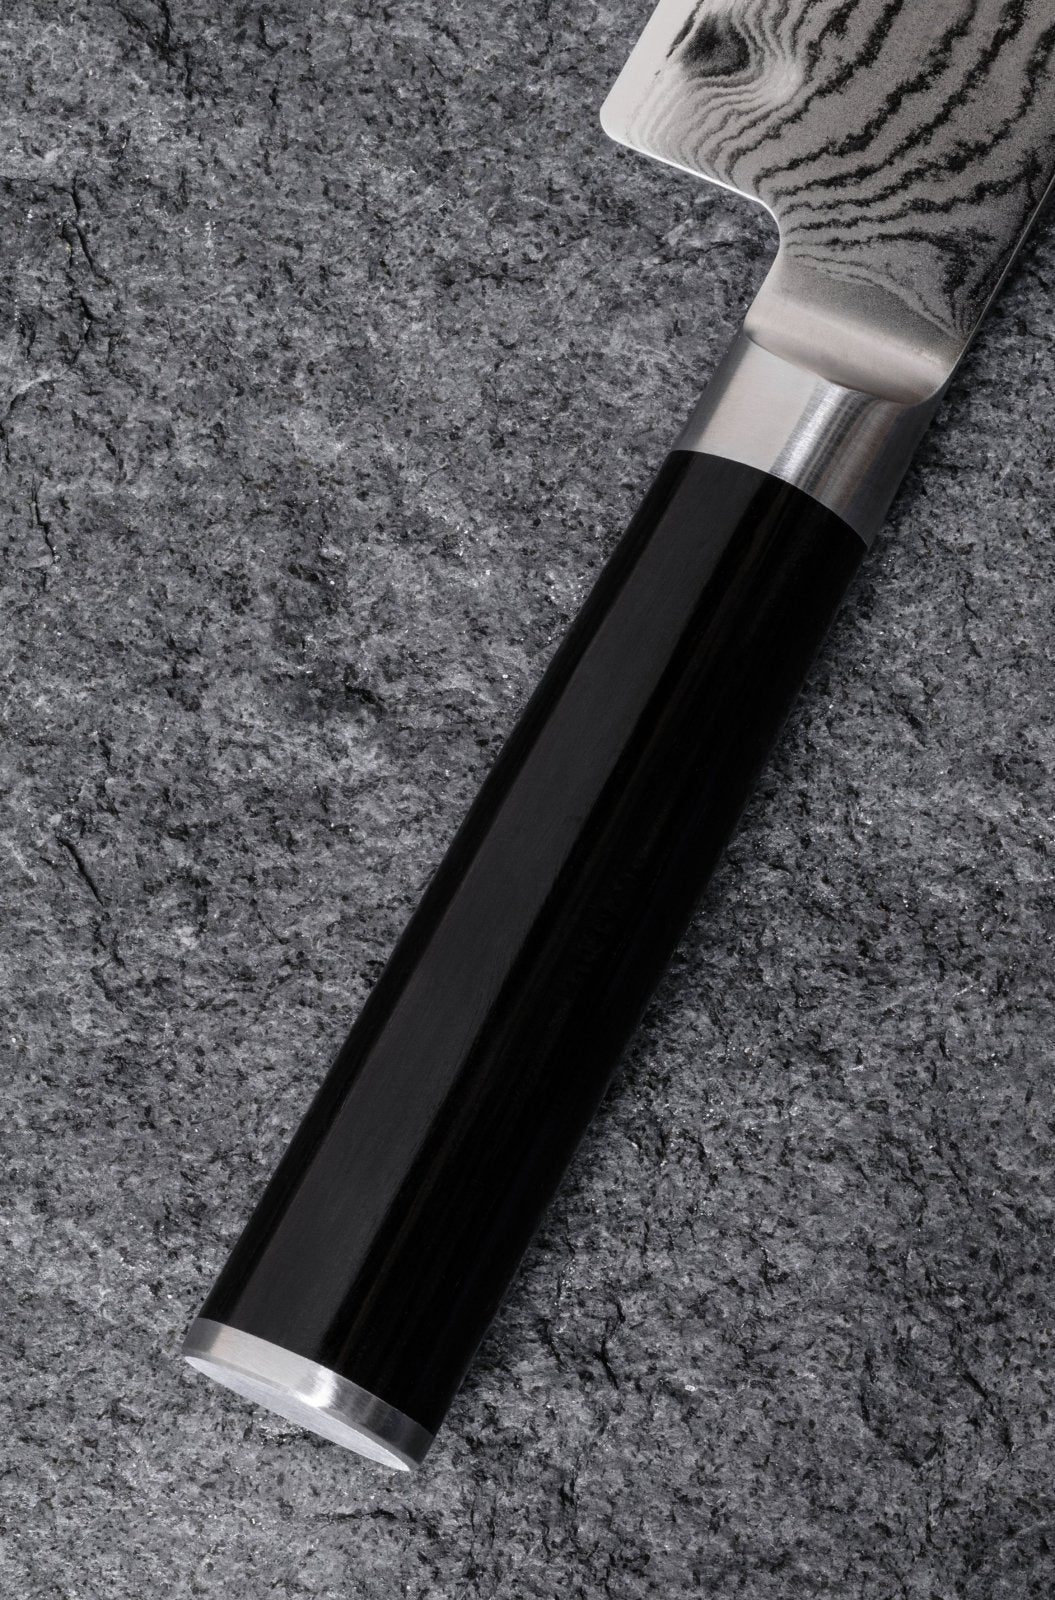 KAI Shun 8.5cm Vegetable Knife - KAI-DM-0714 - The Cotswold Knife Company